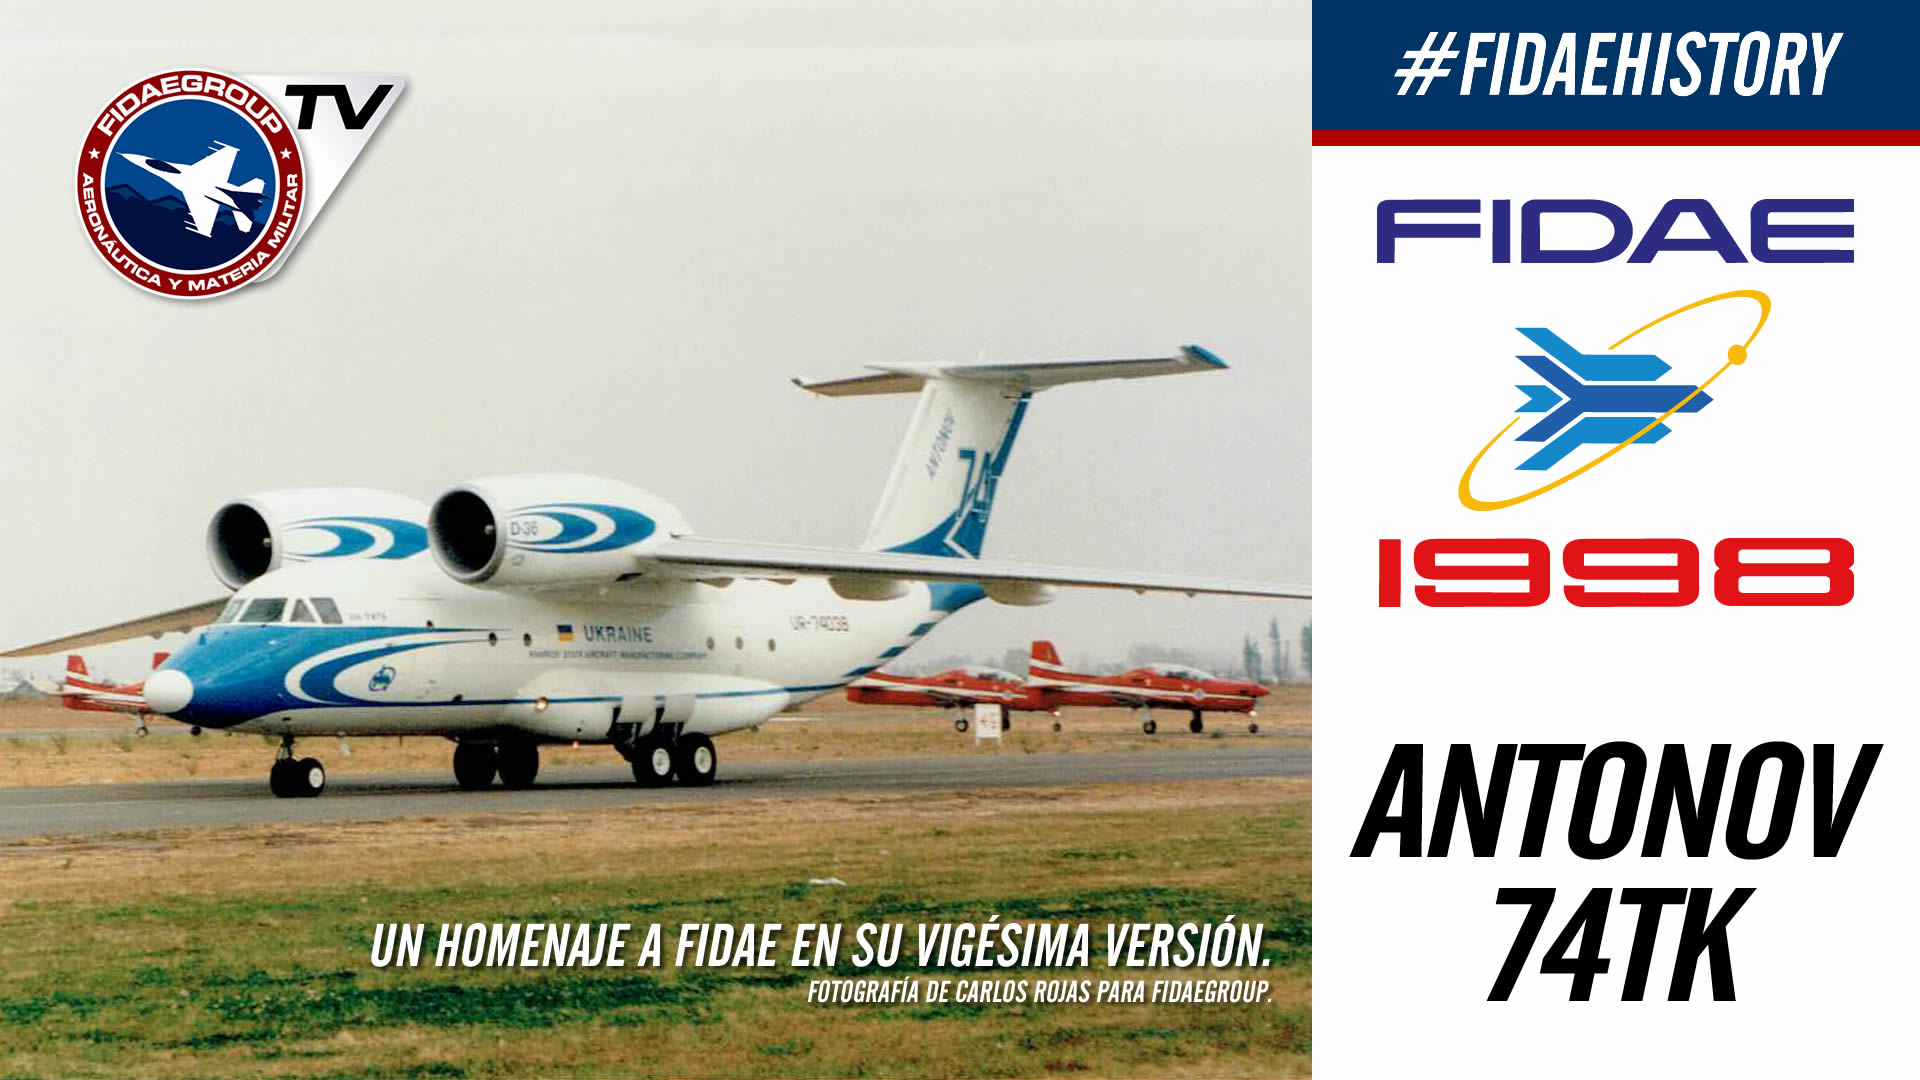 Demostración aérea de Antonov An-74tk en FIDAE 1998, Los Cerrillos